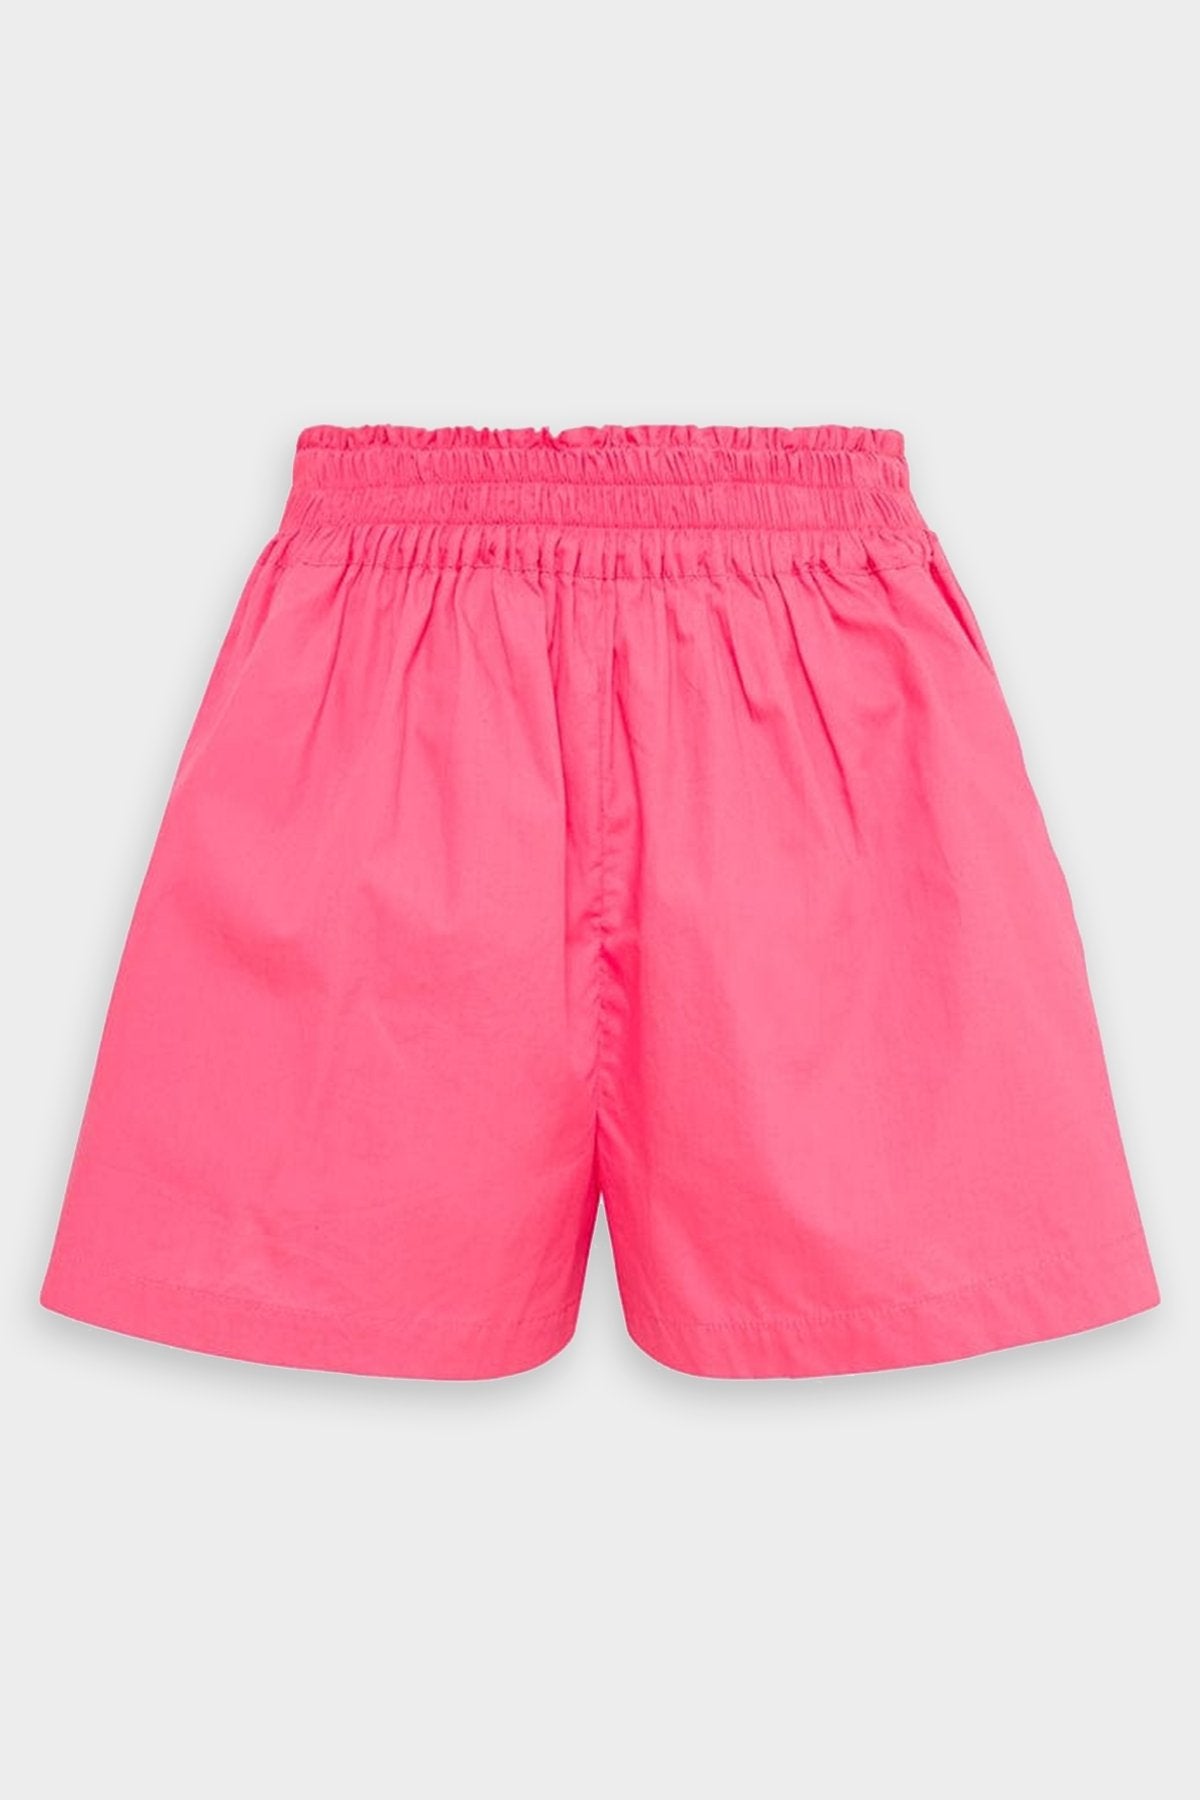 Elva Shorts in Hot Pink - shop-olivia.com